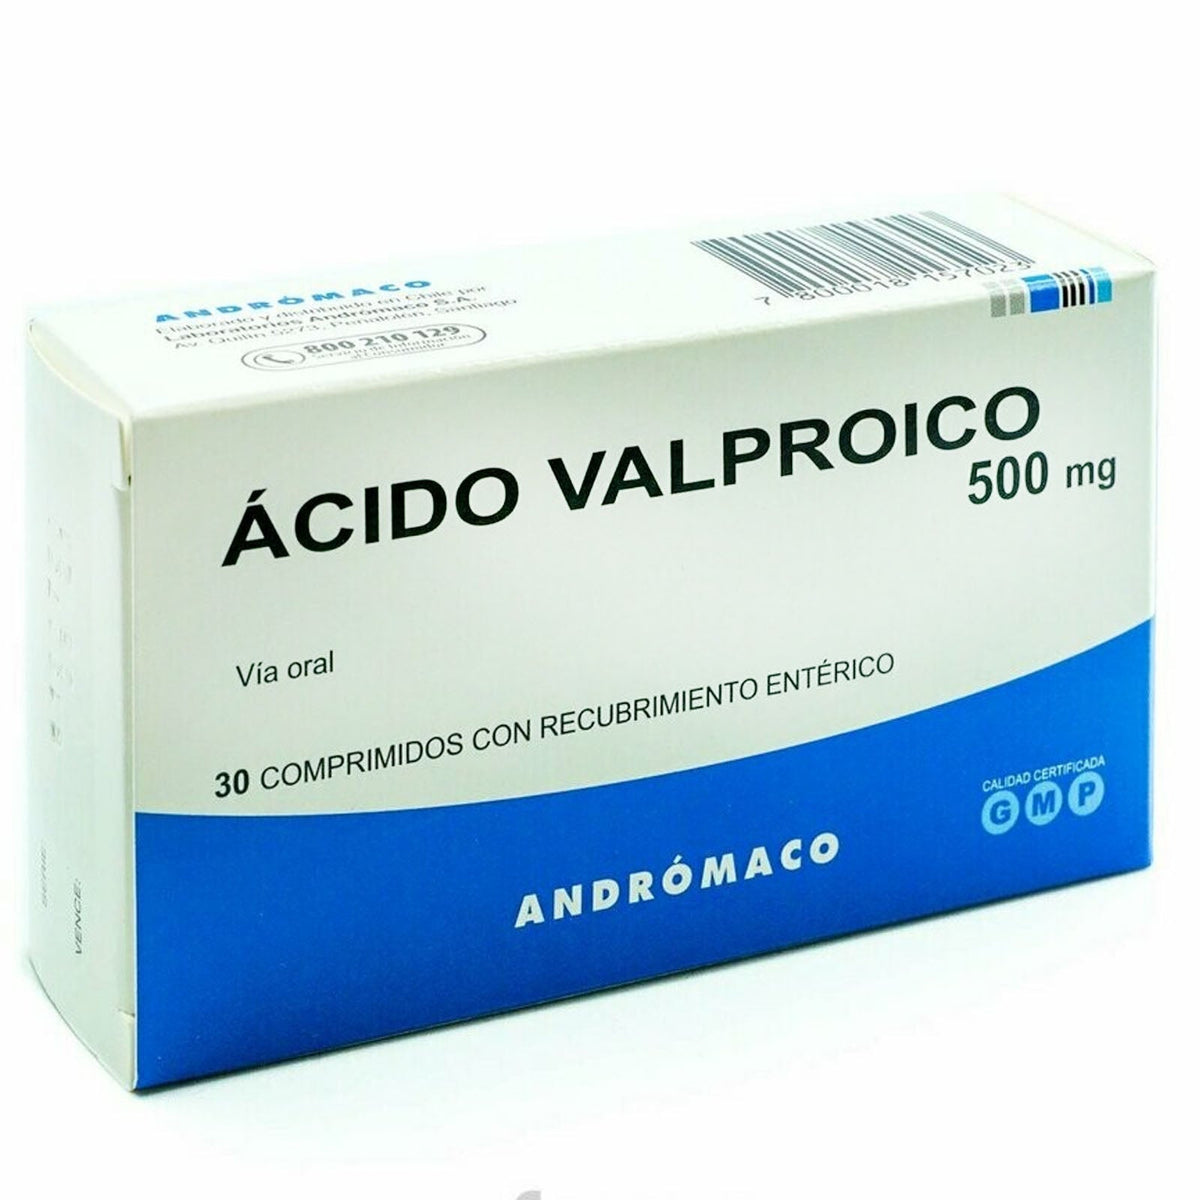 Ácido Valproico Comprimidos con Recubrimiento Entérico 500mg.